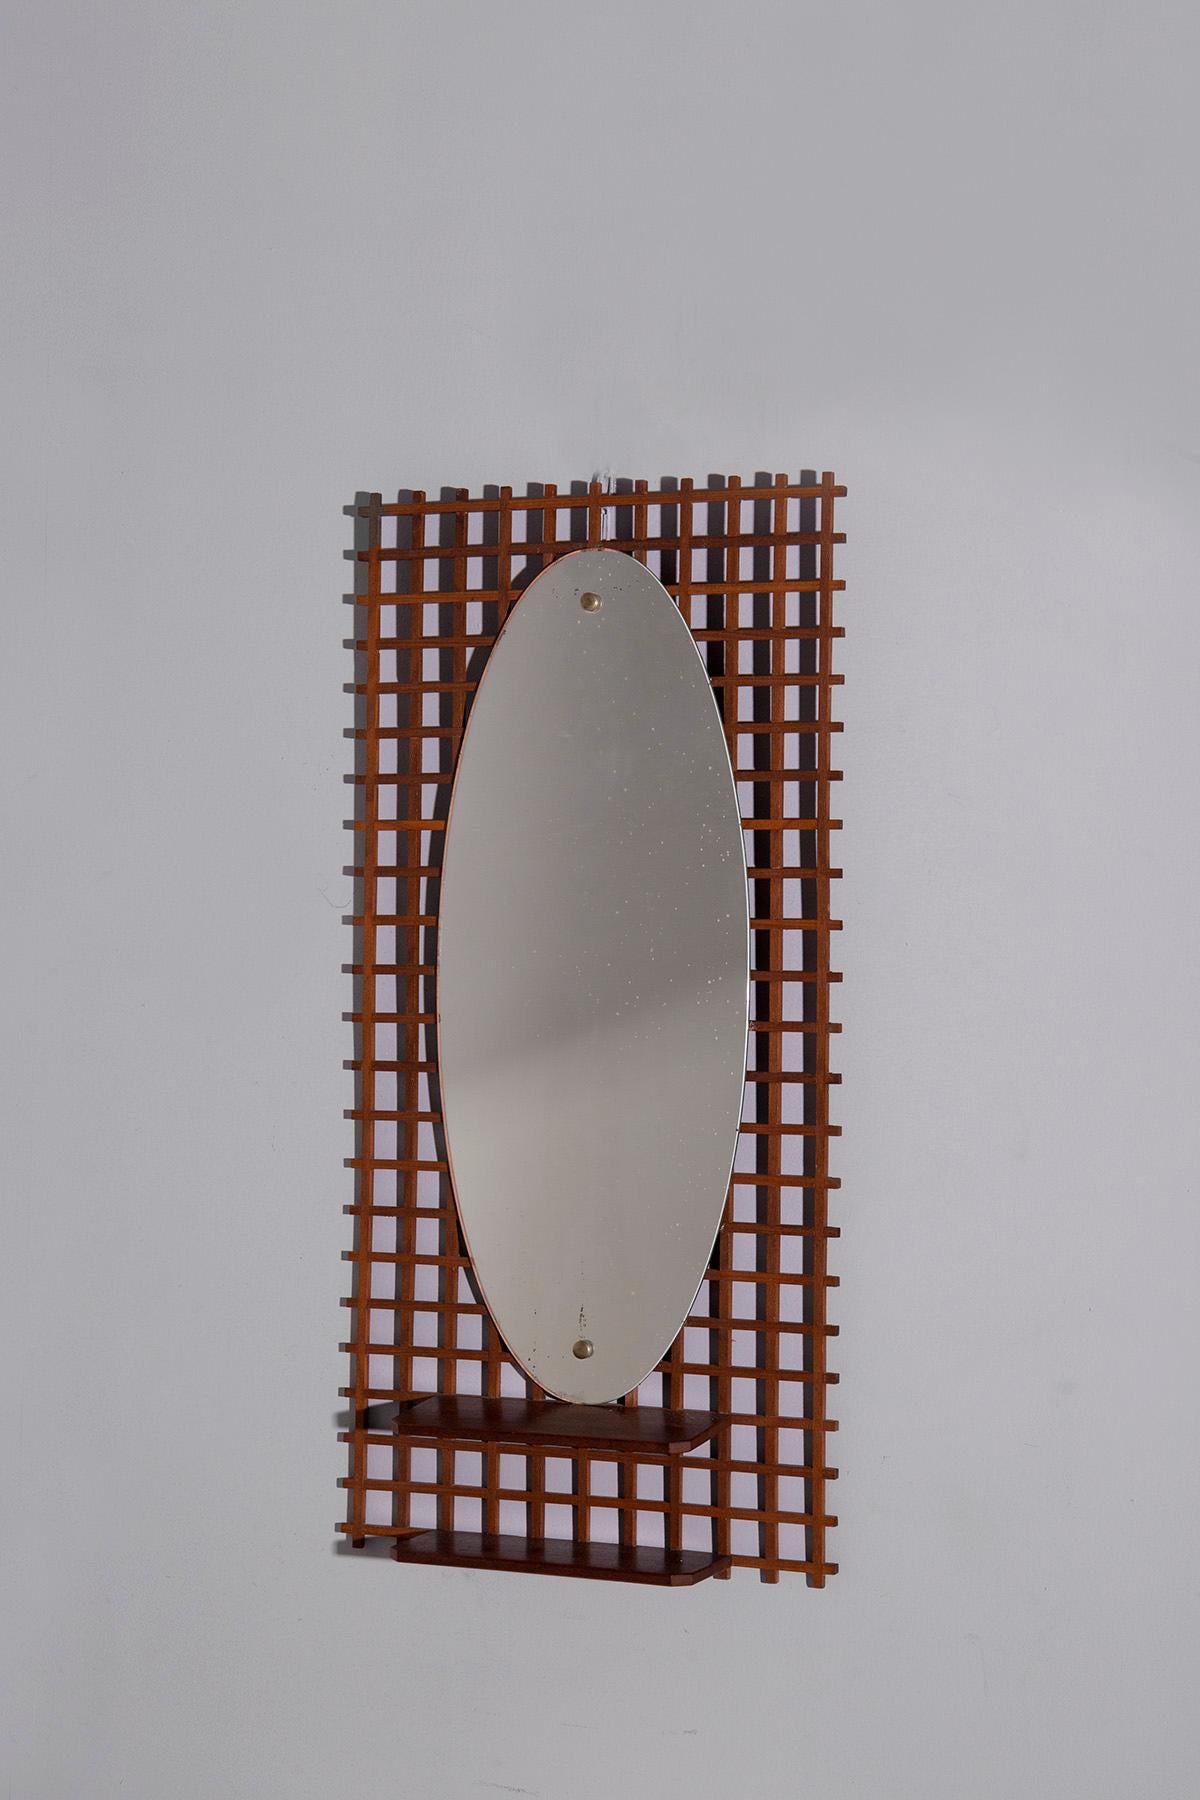 Entrez dans le charme des années 60, où l'élégance vintage rencontre le charme géométrique sous la forme d'un miroir italien exquis. Ce meuble porte en lui la nostalgie d'une époque révolue, où l'art et l'artisanat étaient fondamentaux.

Le miroir,